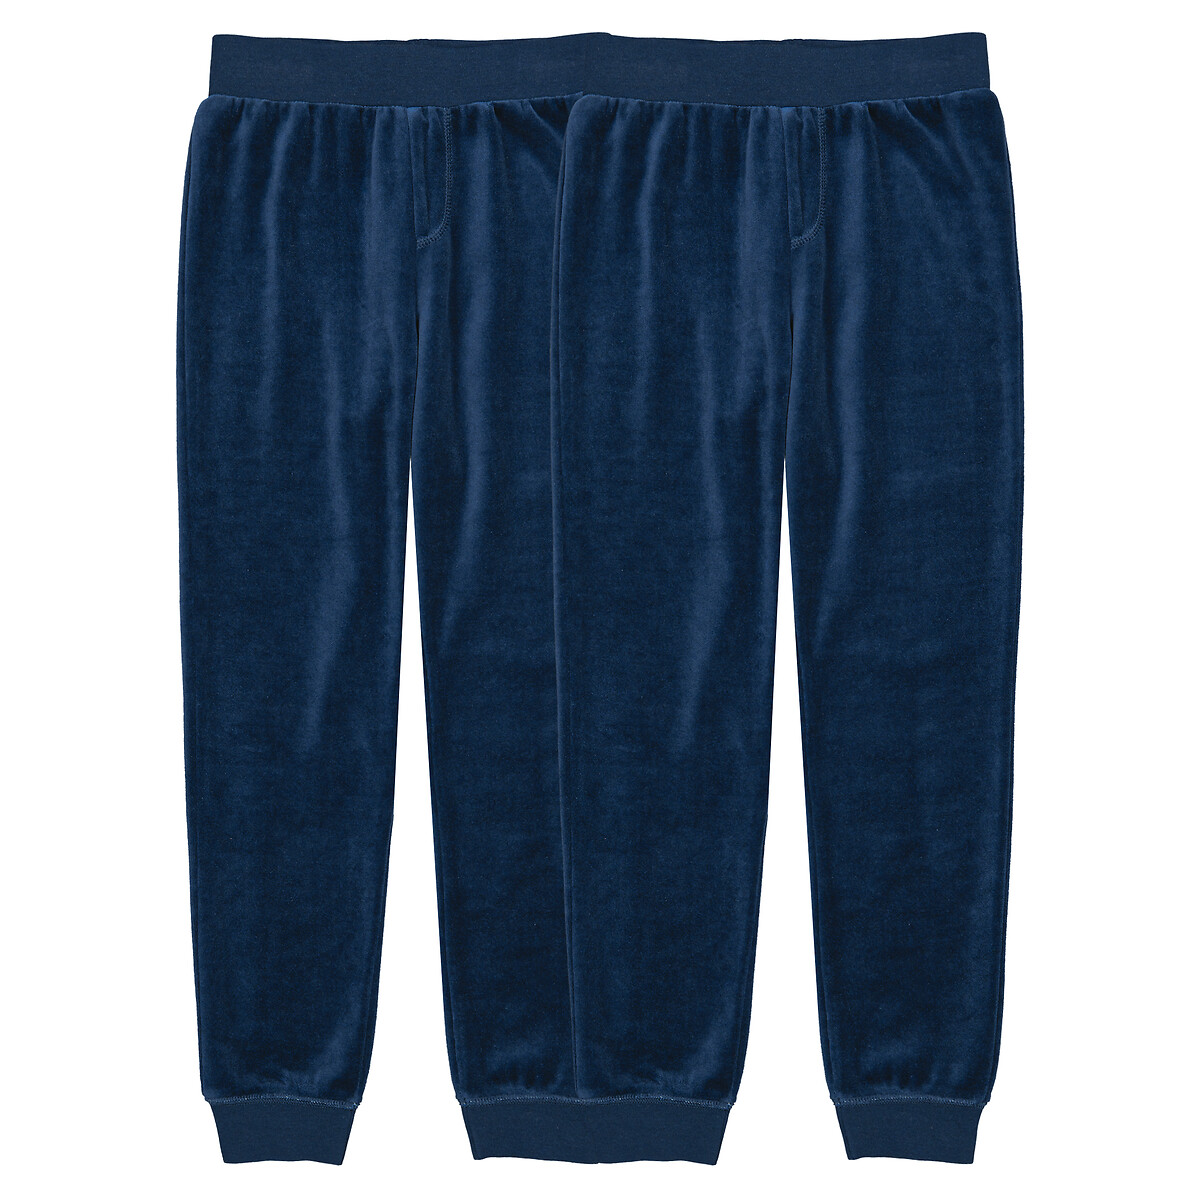 Комплект из двух брюк пижамных из велюра 10 лет - 138 см синий комплект из двух пижам из велюра с принтом медведь 10 лет 138 см синий